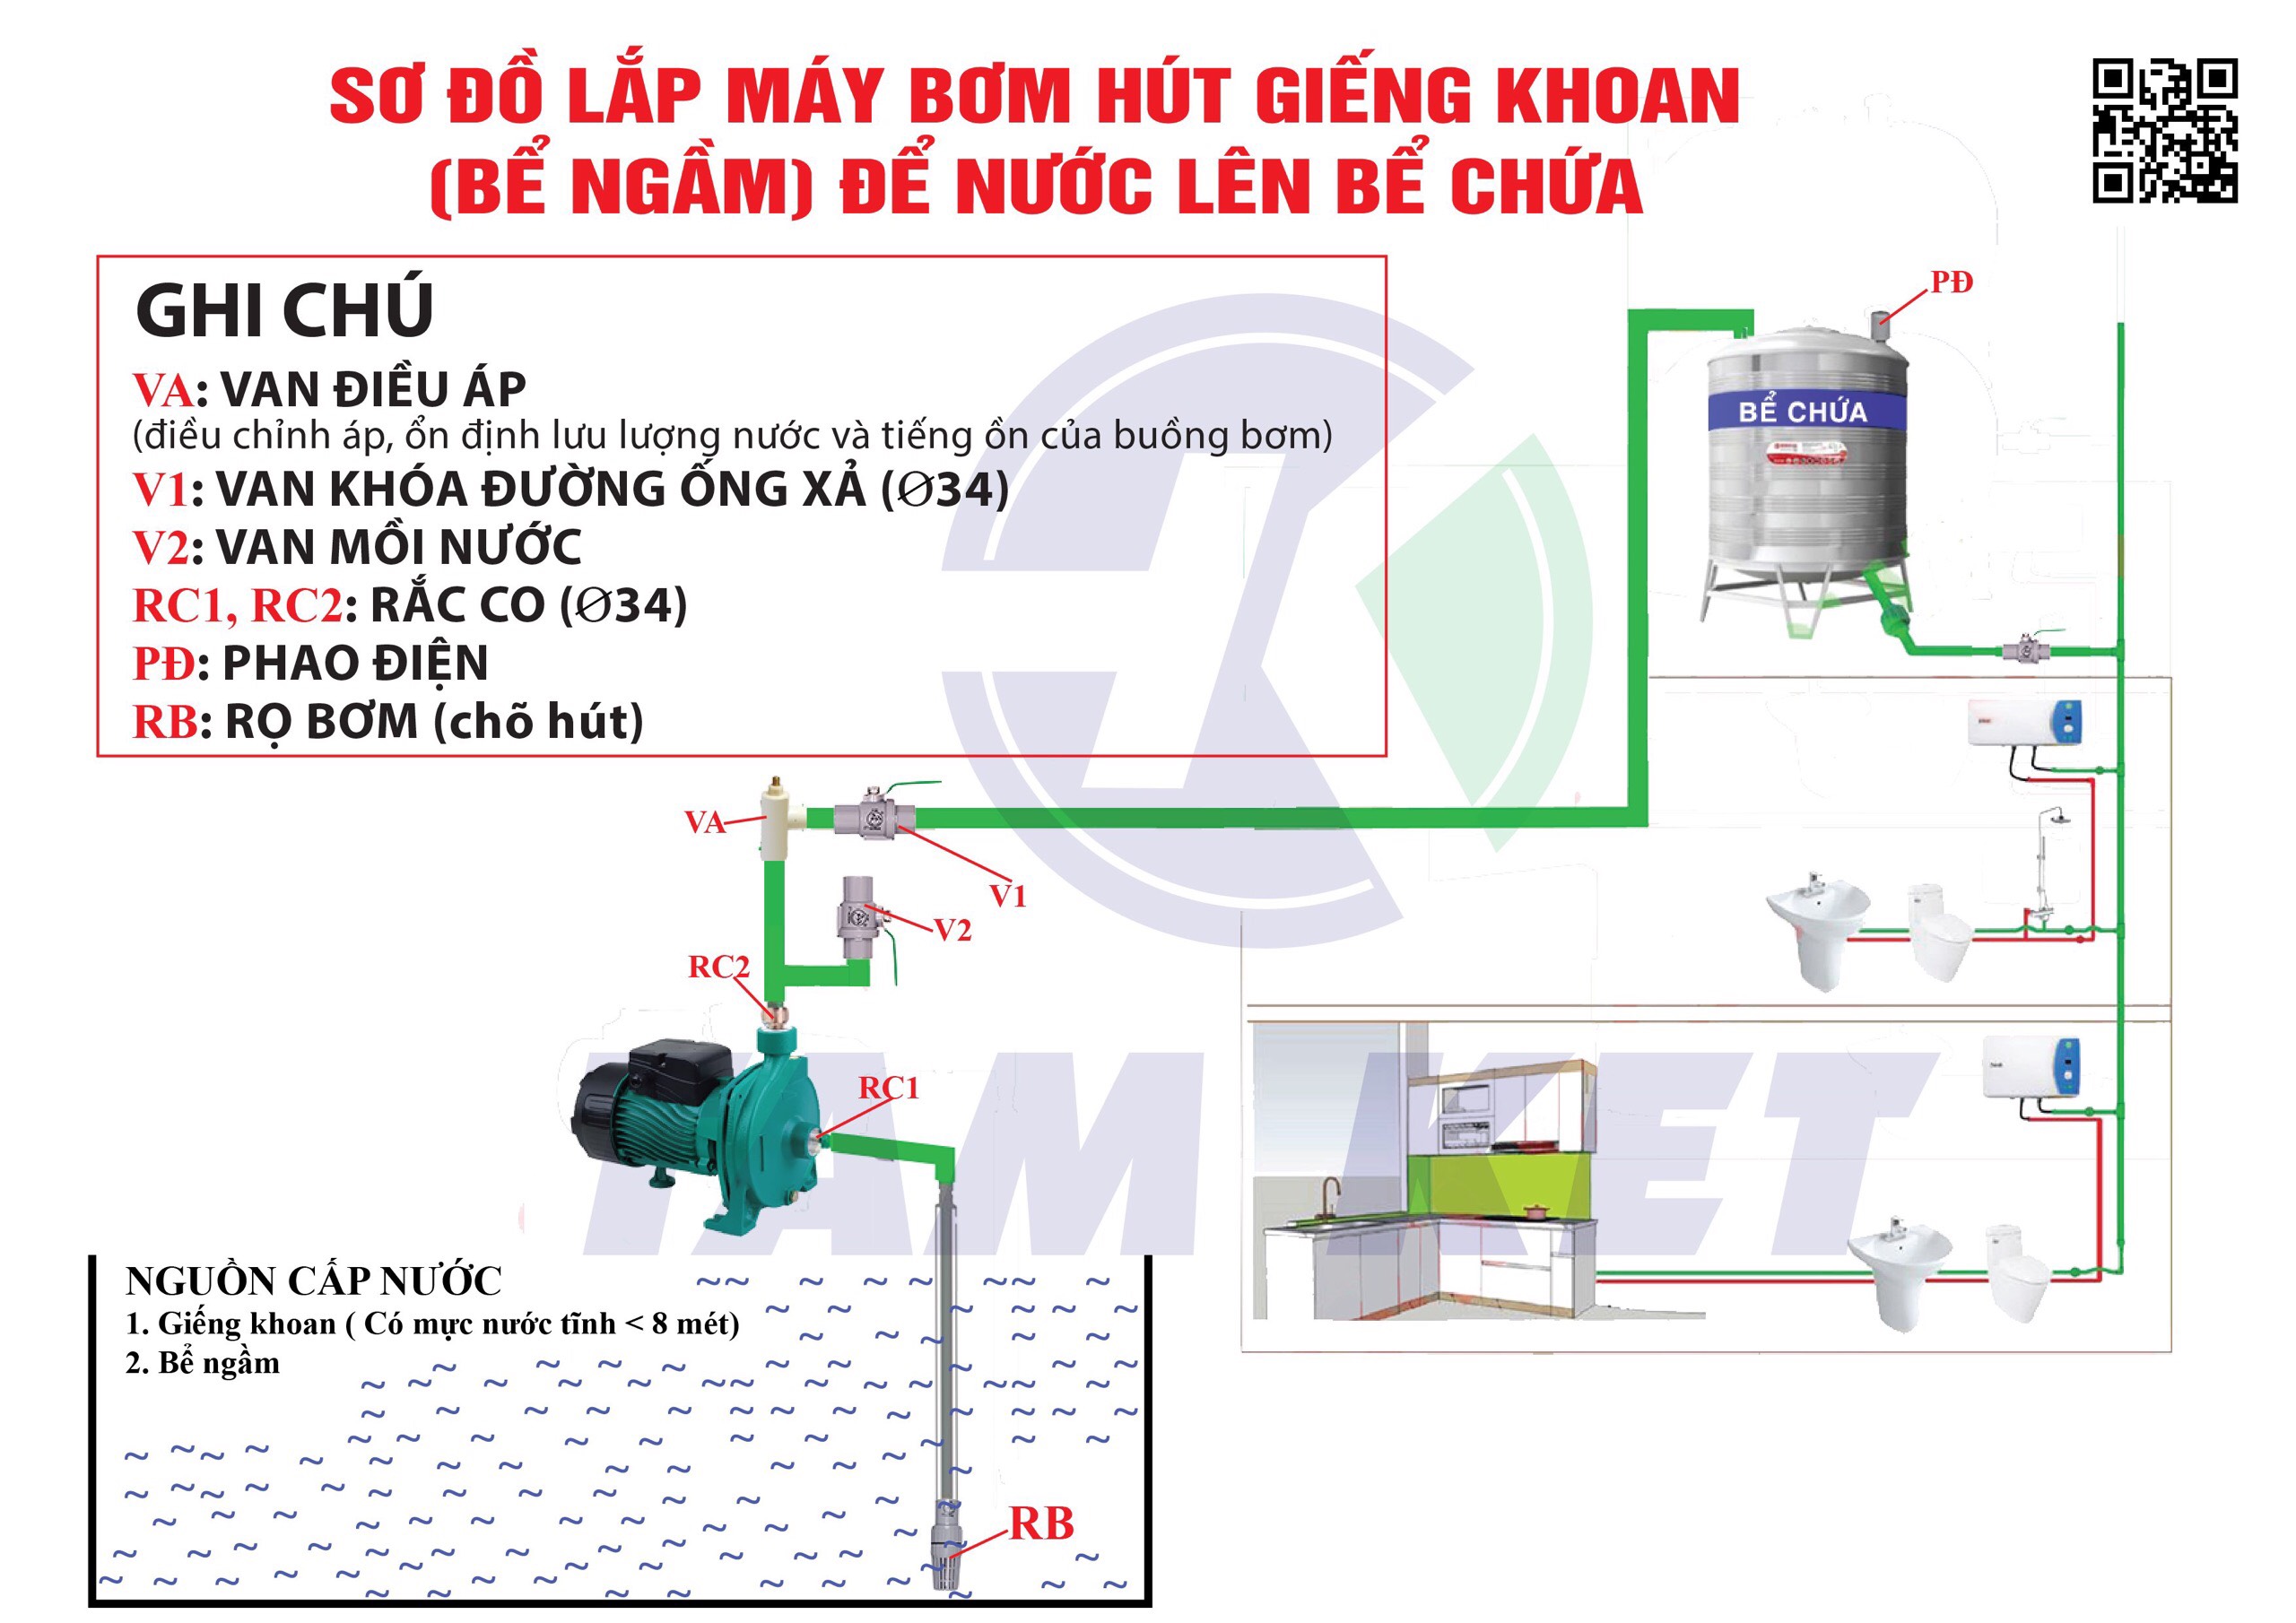 Hướng dẫn lắp bơm đĩa CHITI CP-151 hút giếng khoan hoặc bể ngầm